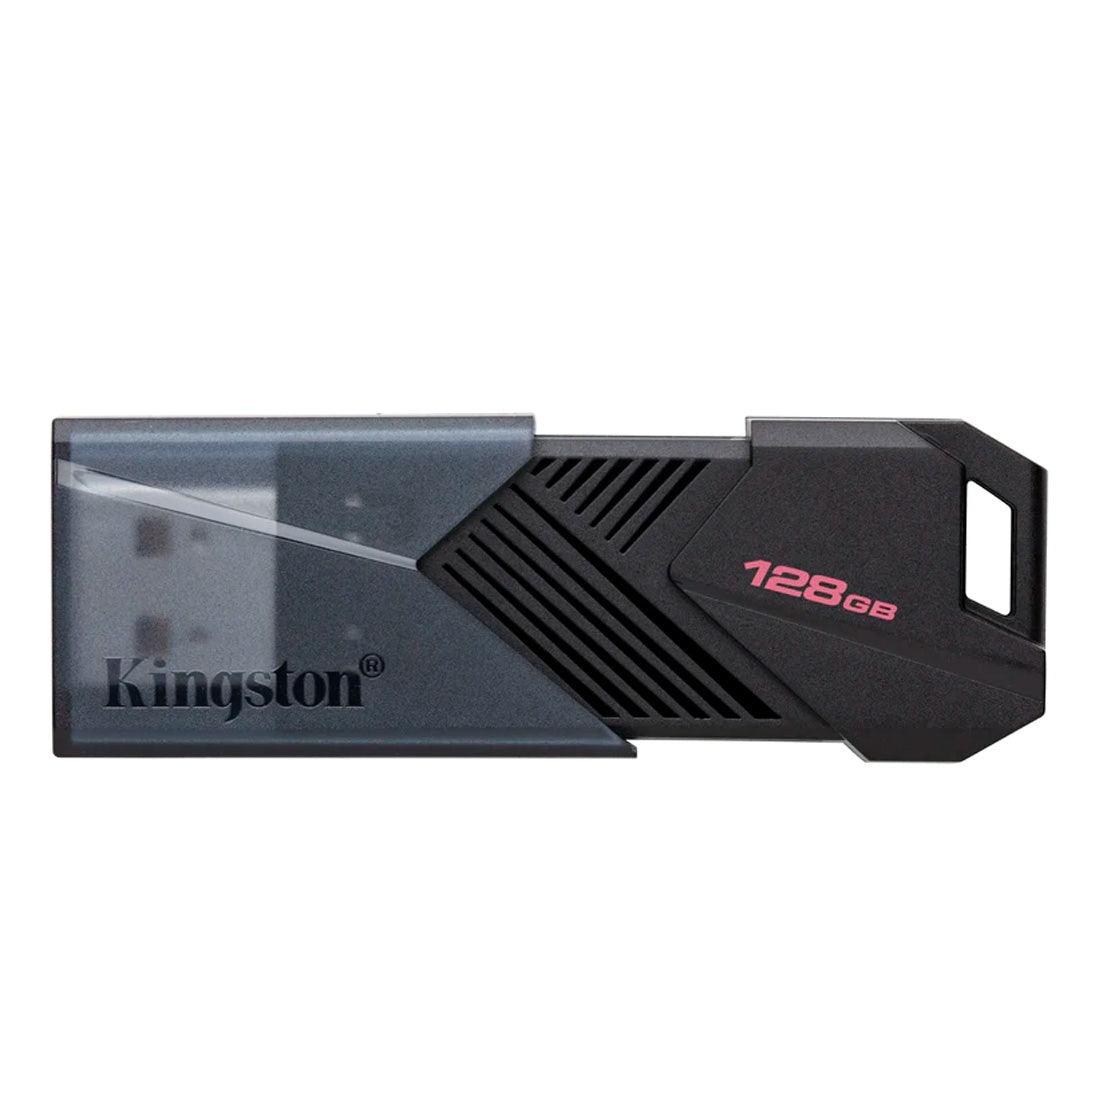 Pen drive Kingston 128GB Exodia Onyx USB 3.2 Gen1 DTXON128Gi - Mega Market